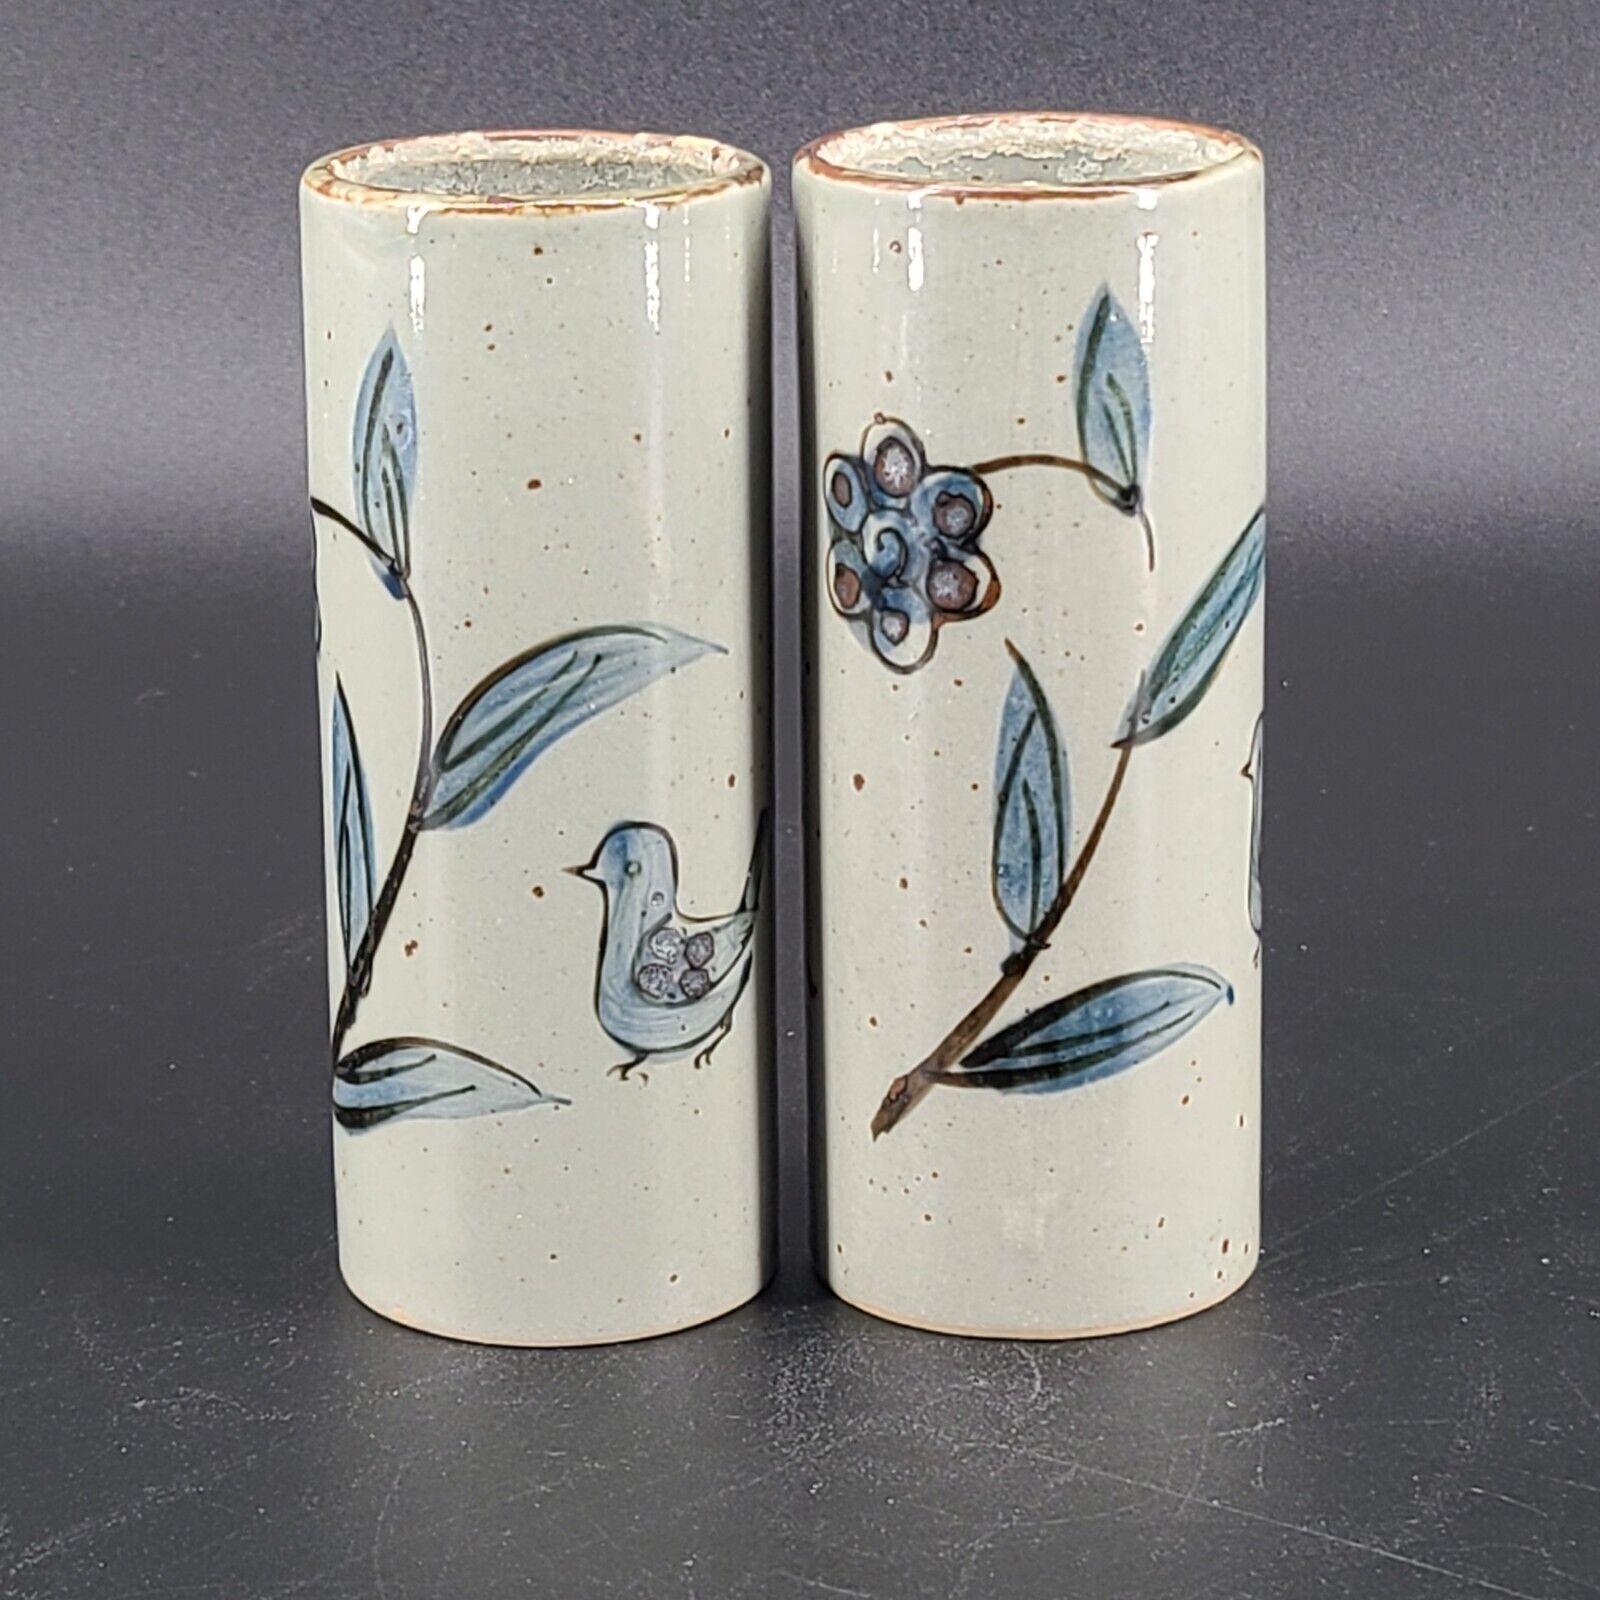 Tonala Pottery Ken Edwards Style Handpainted Bud Vase Tumbler Blue Birds Flowers